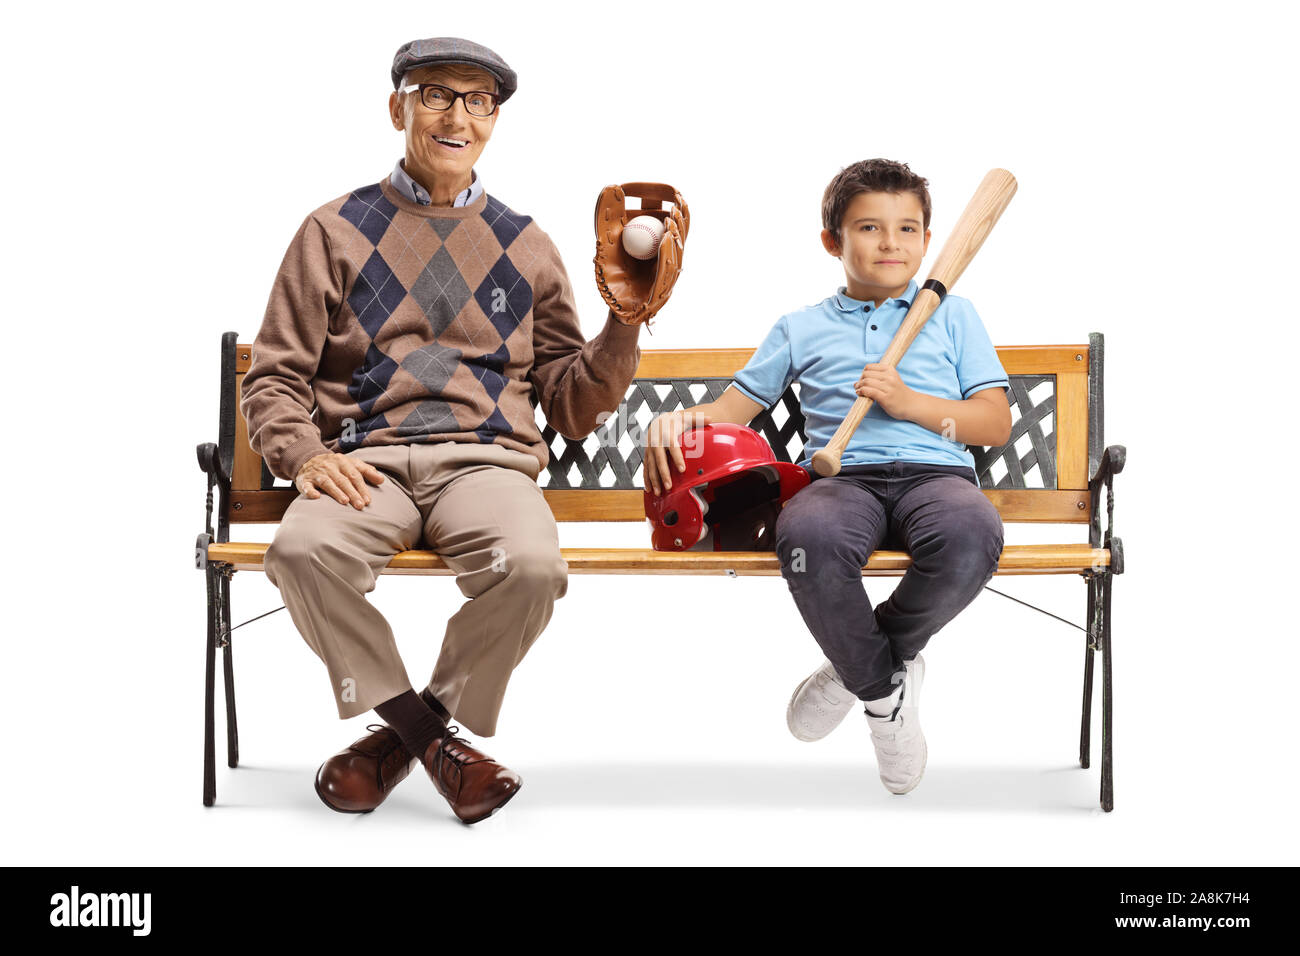 Garçon et un homme âgé assis sur un banc avec un équipement de base-ball isolé sur fond blanc Banque D'Images